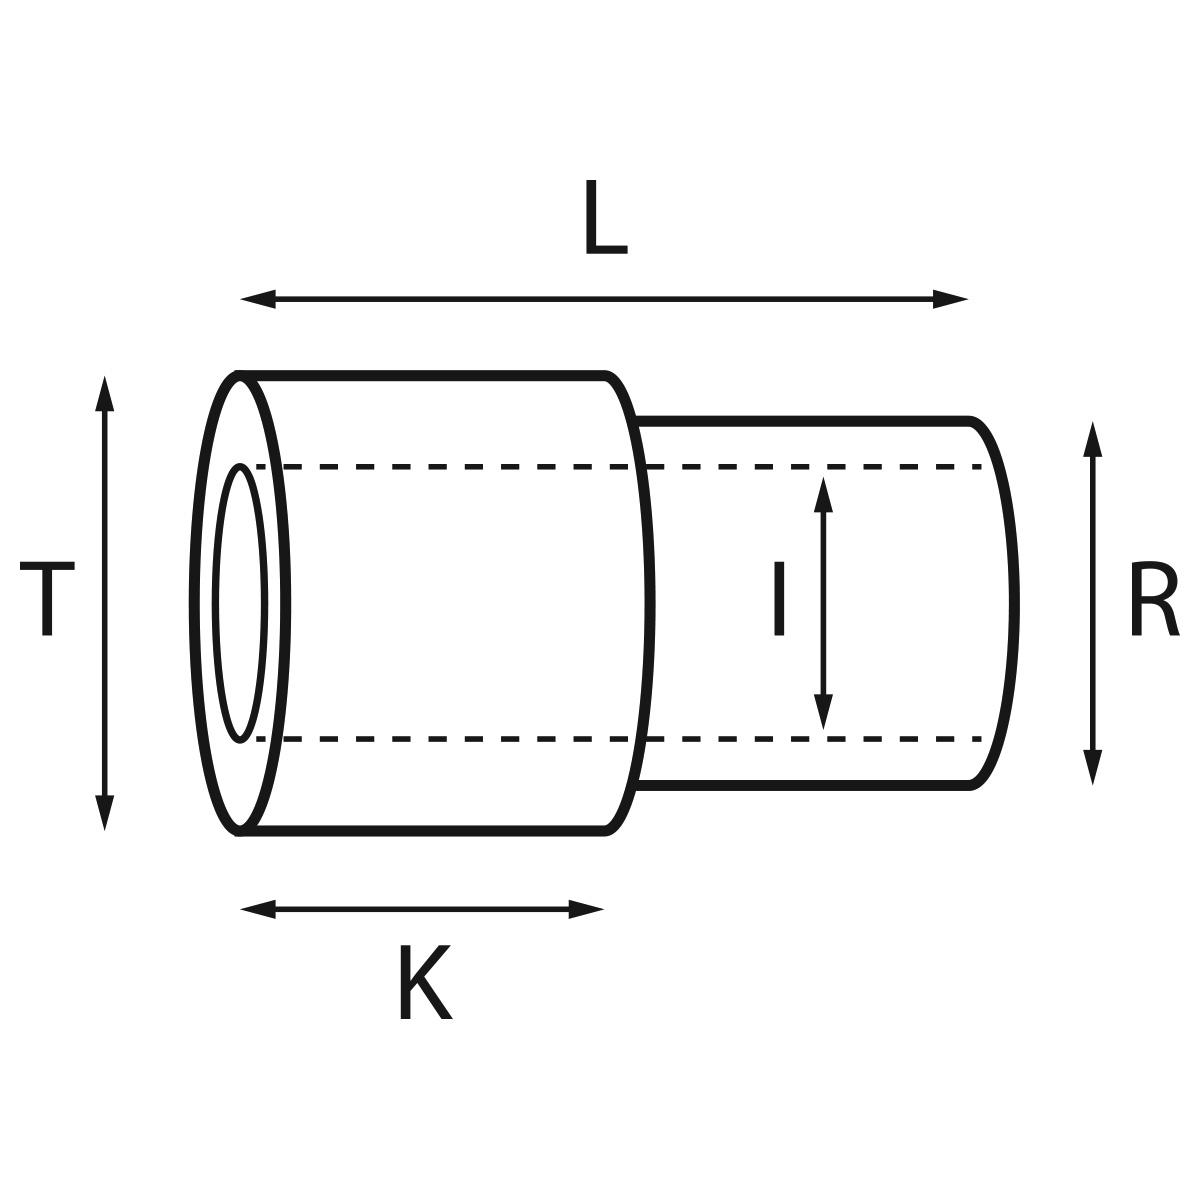 Gehäusetube Typ AS 13826, Tubus Ø 2 mm, Gesamtlänge 2,8 mm, Innen Ø 1,4 mm, für wasserdichte Kronen